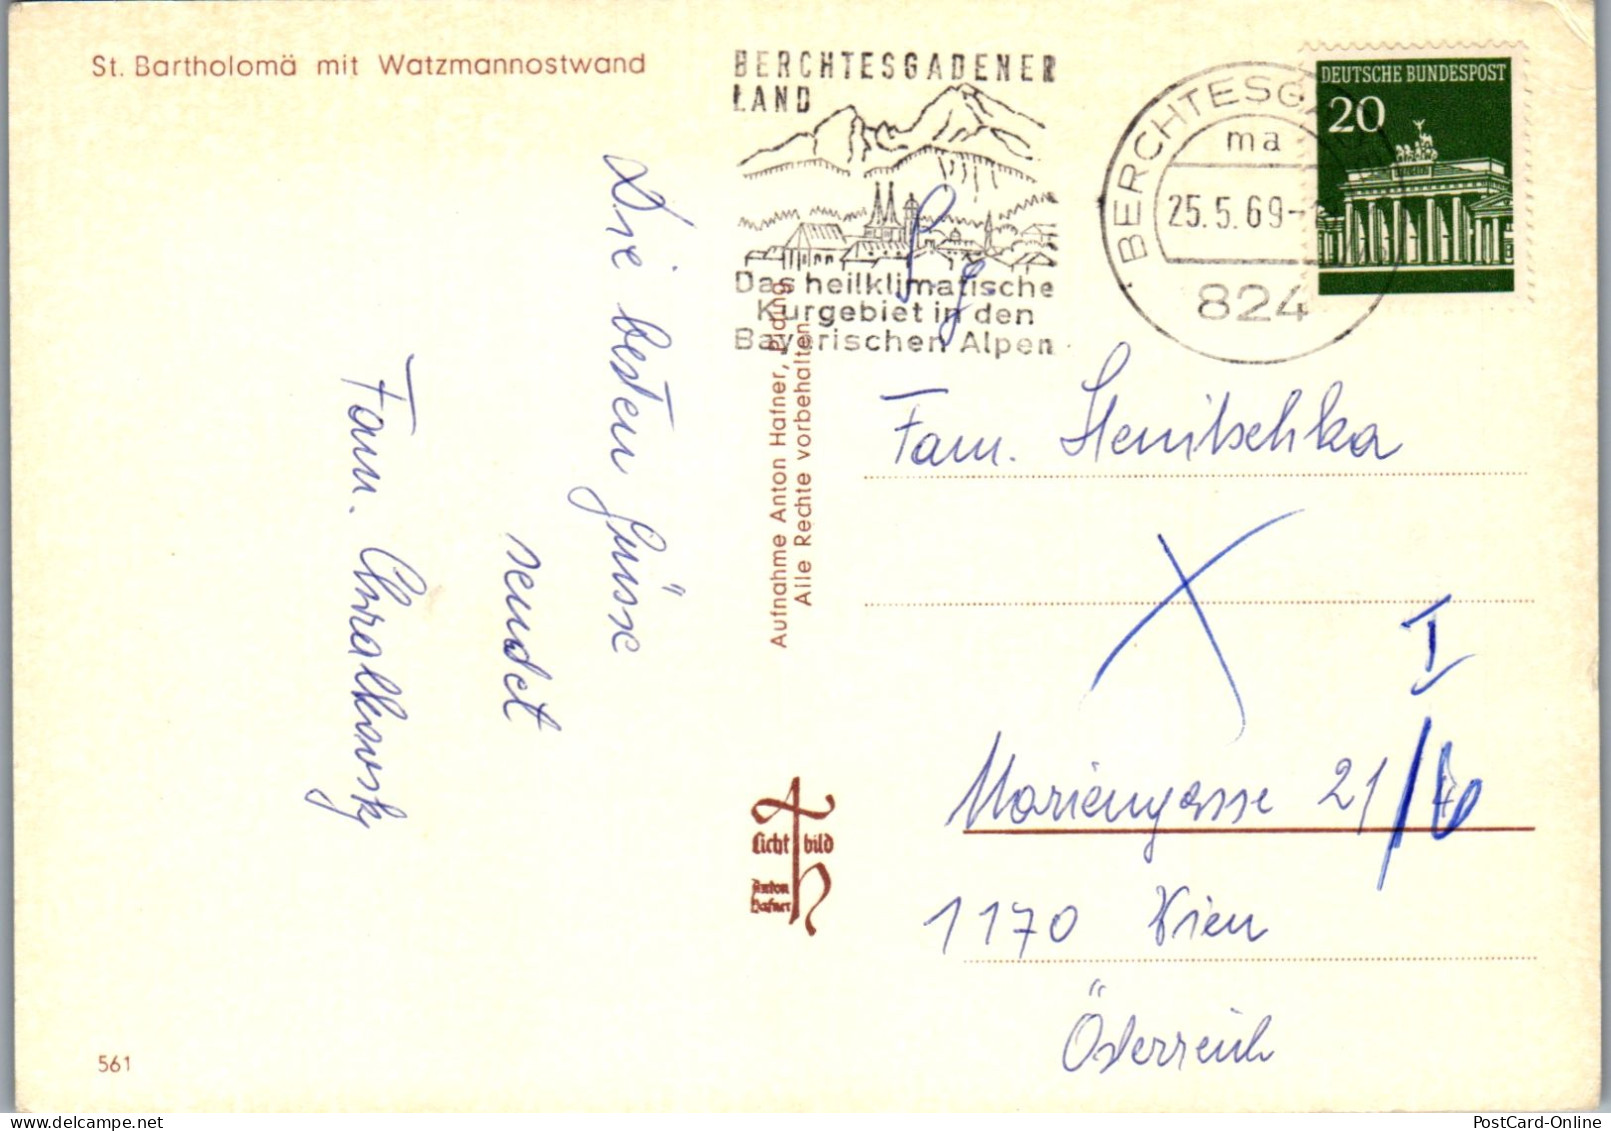 51682 - Deutschland - St. Bartholomä , Mit Watzmannostwand - Gelaufen 1969 - Berchtesgaden